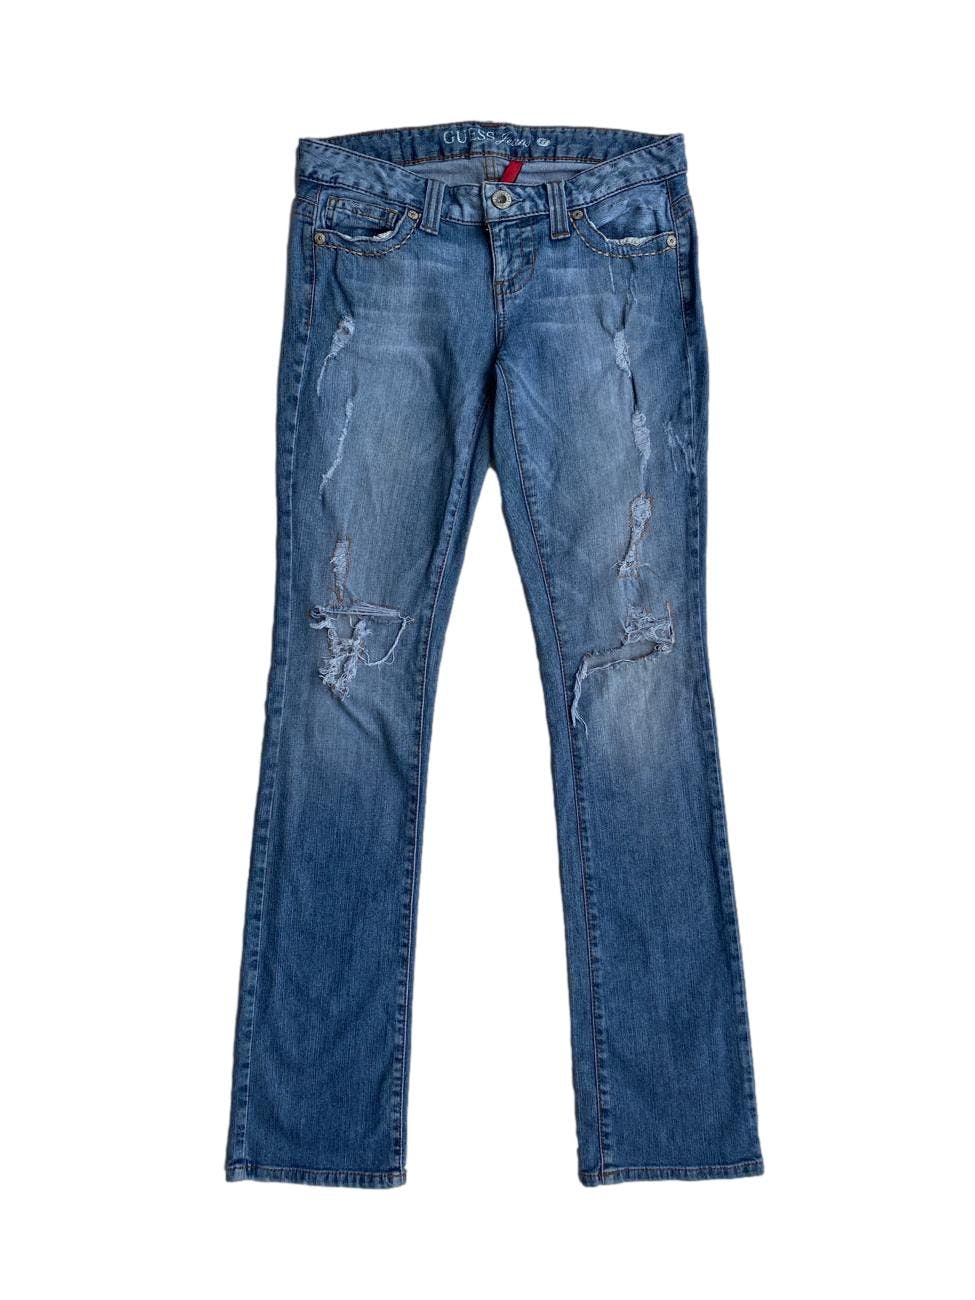 Ripped Jeans Guess con detalles rasgados. Cintura: 80cm, largo: 107cm.  Cintura: 